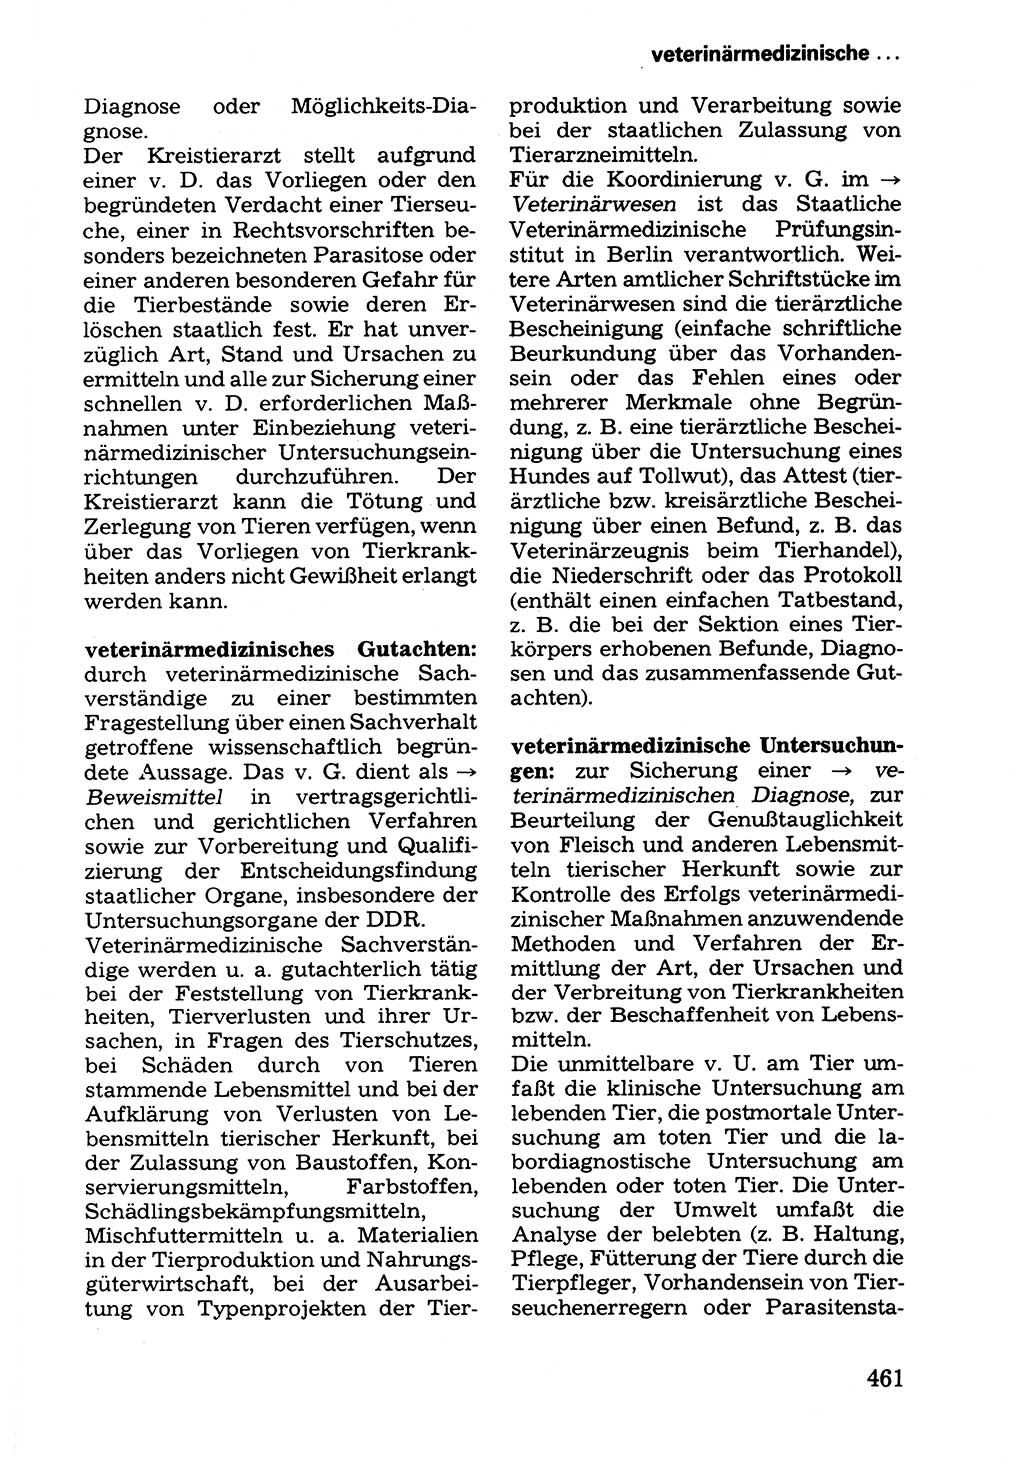 Wörterbuch der sozialistischen Kriminalistik [Deutsche Demokratische Republik (DDR)] 1981, Seite 461 (Wb. soz. Krim. DDR 1981, S. 461)